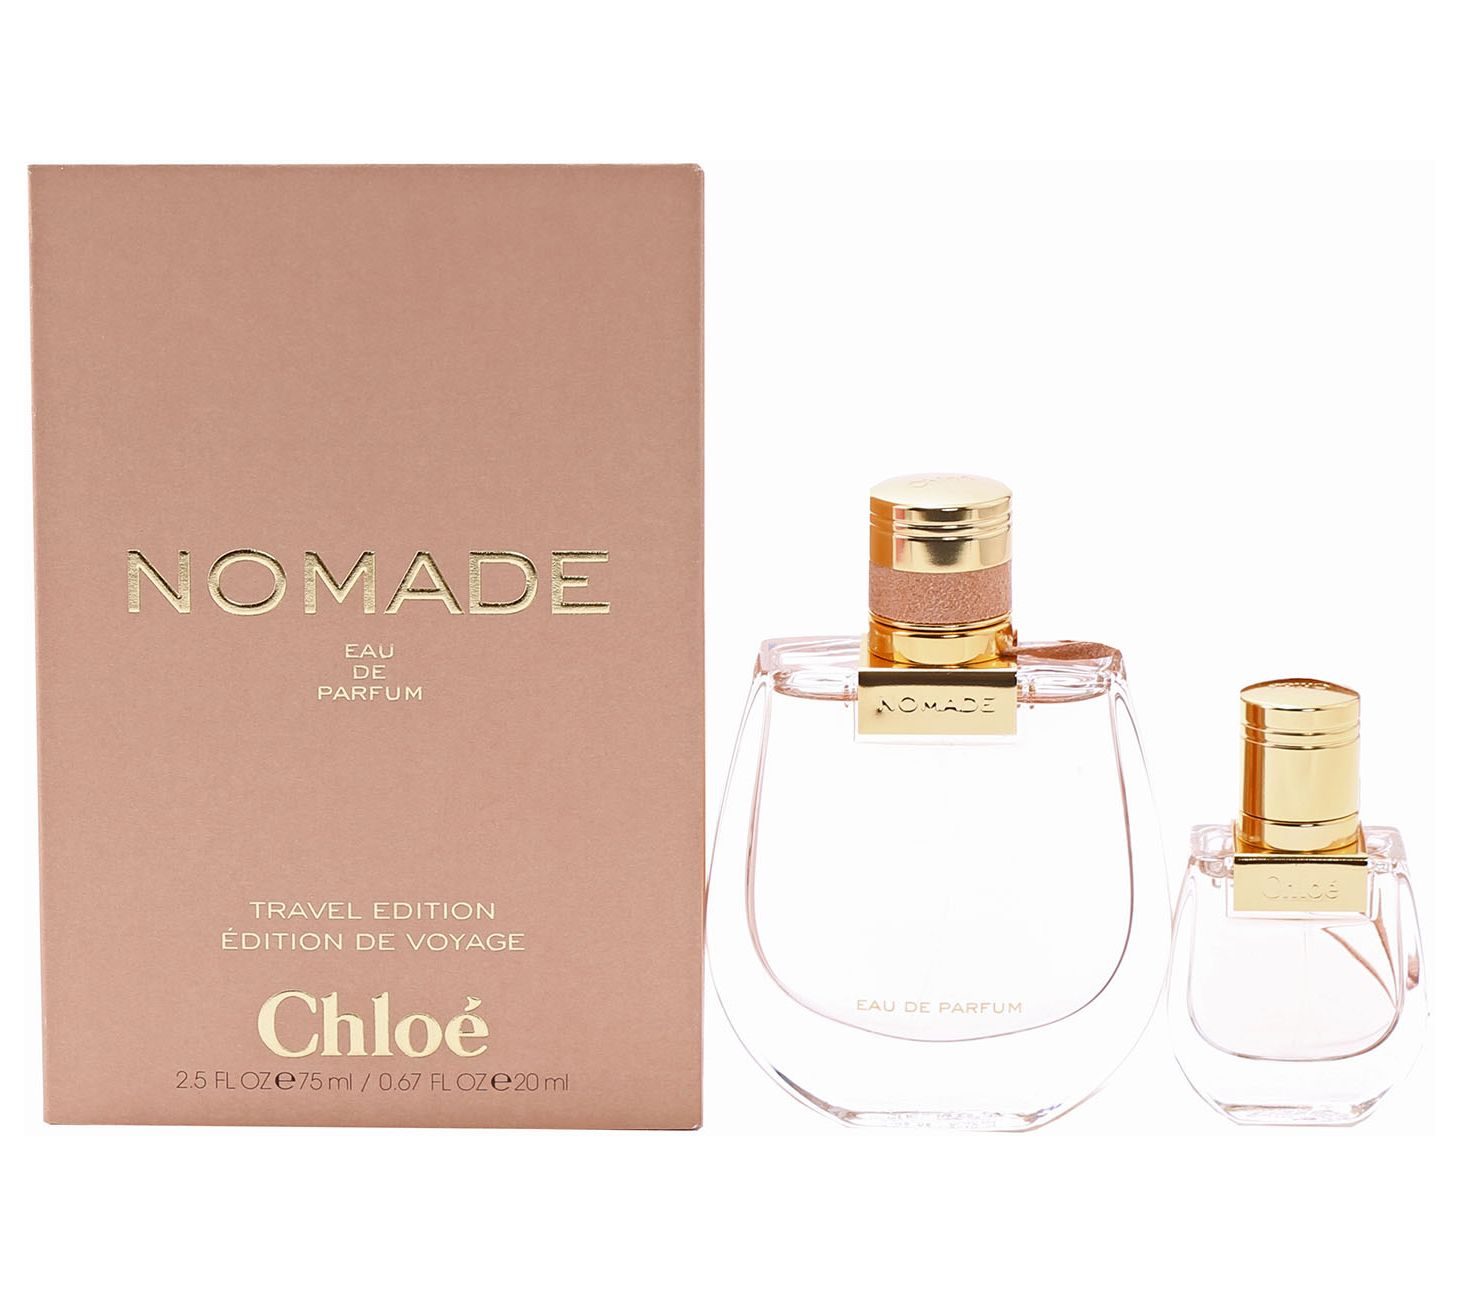 Chloé Nomade Eau de parfum 20 ml